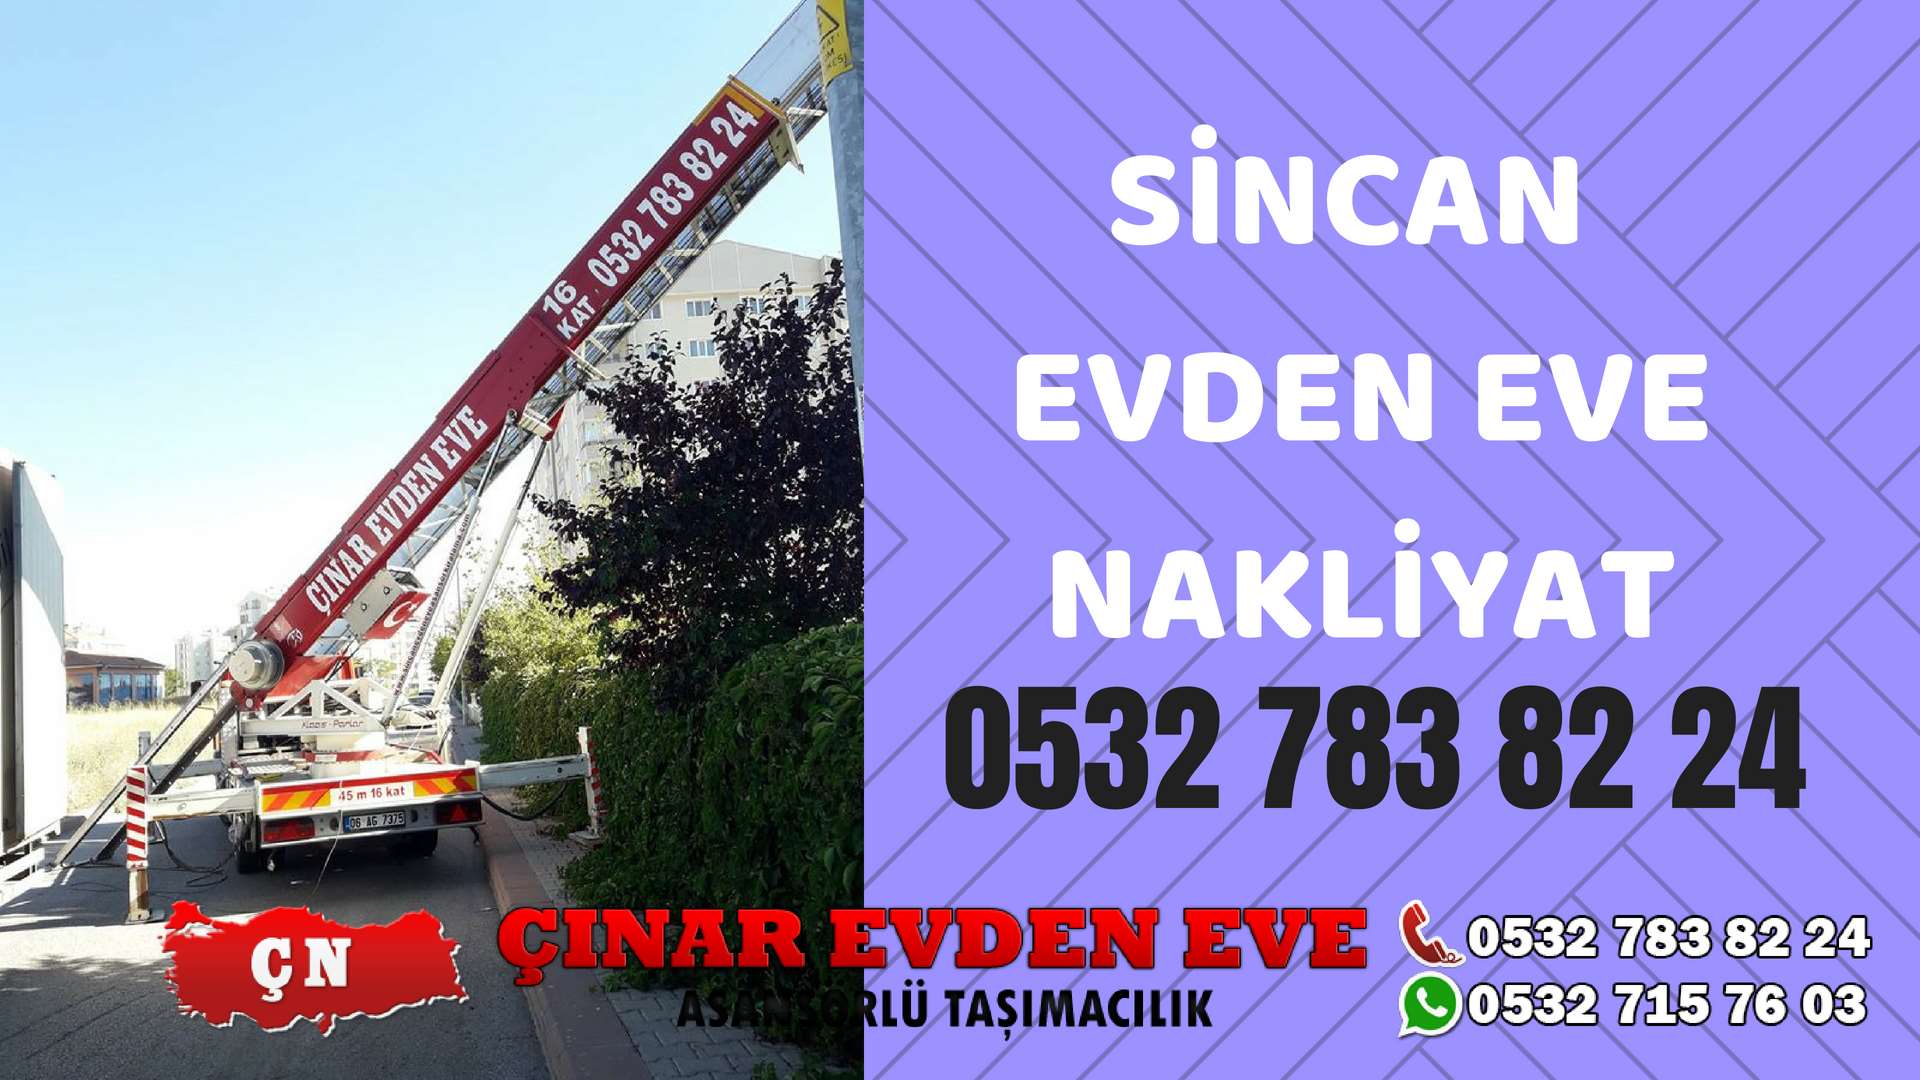 Ankara İvedik Sincan Evden Eve Nakliyat, Asansörlü Taşıma Çınar Nakliyat Sincan 0532 715 76 03